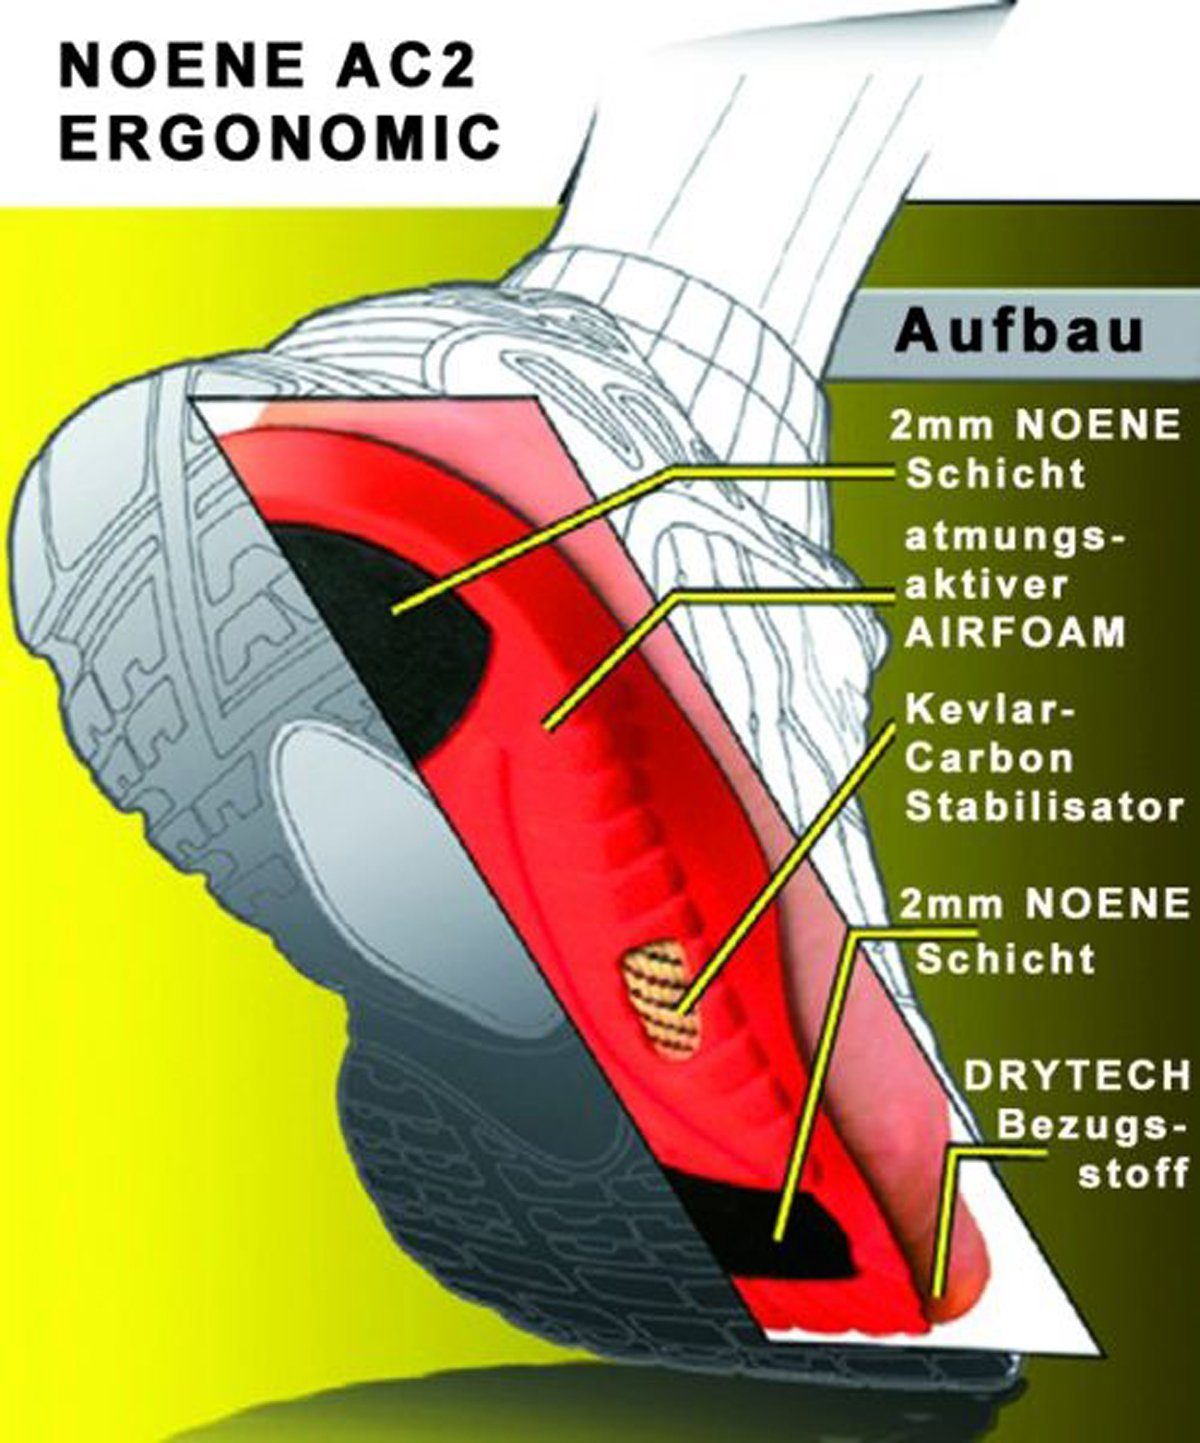 Ergonomic - gelenkschonende und Fuß- Gelenkdämpfer Standardsohle ihre für Noene AC2 Alternative die